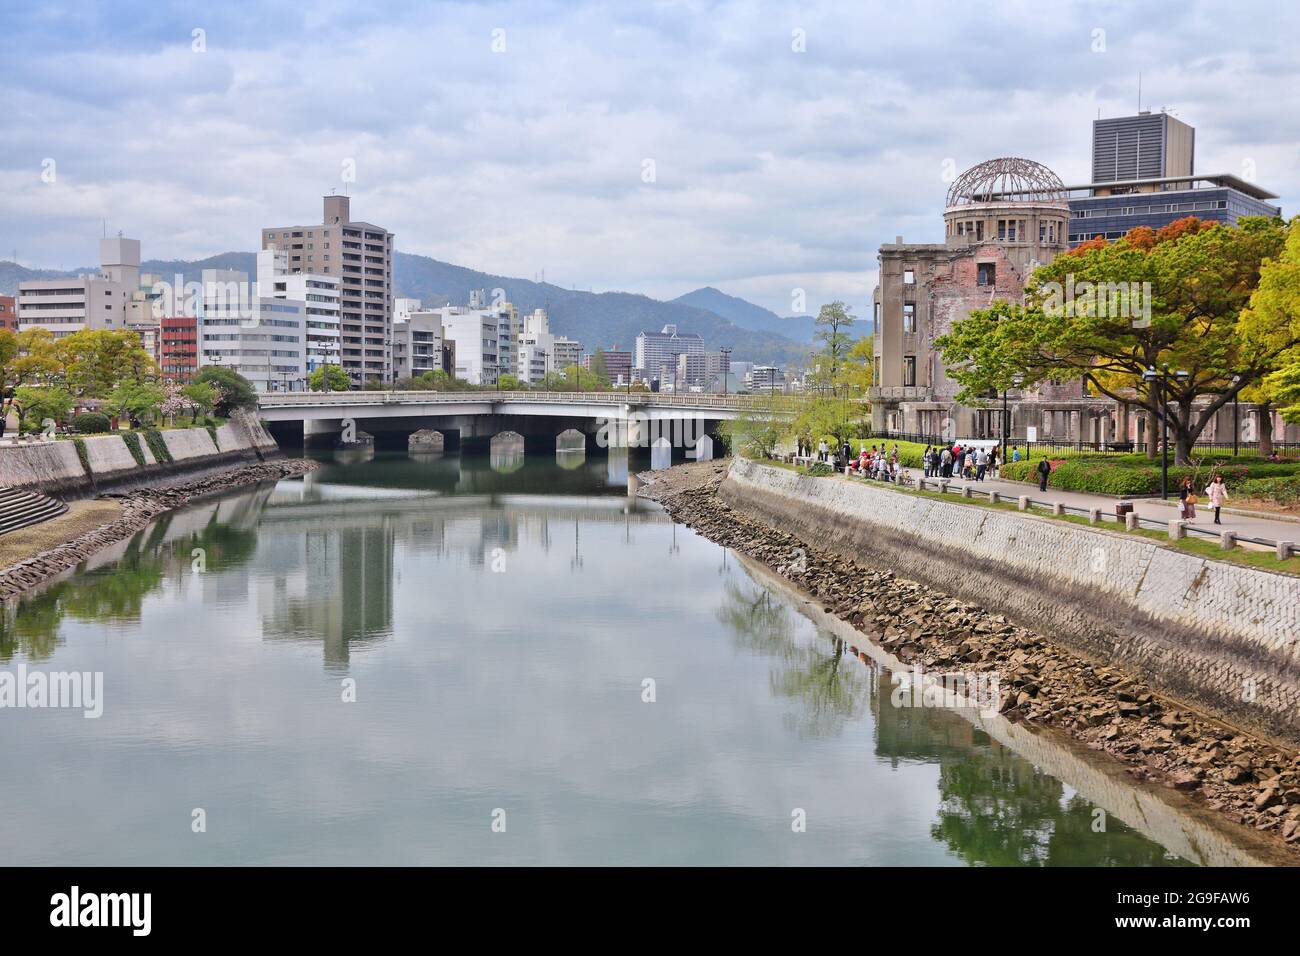 Skyline von Hiroshima. Stadtbild von Hiroshima, Japan. Atomic Bomb Dome auf der rechten Seite. Stockfoto